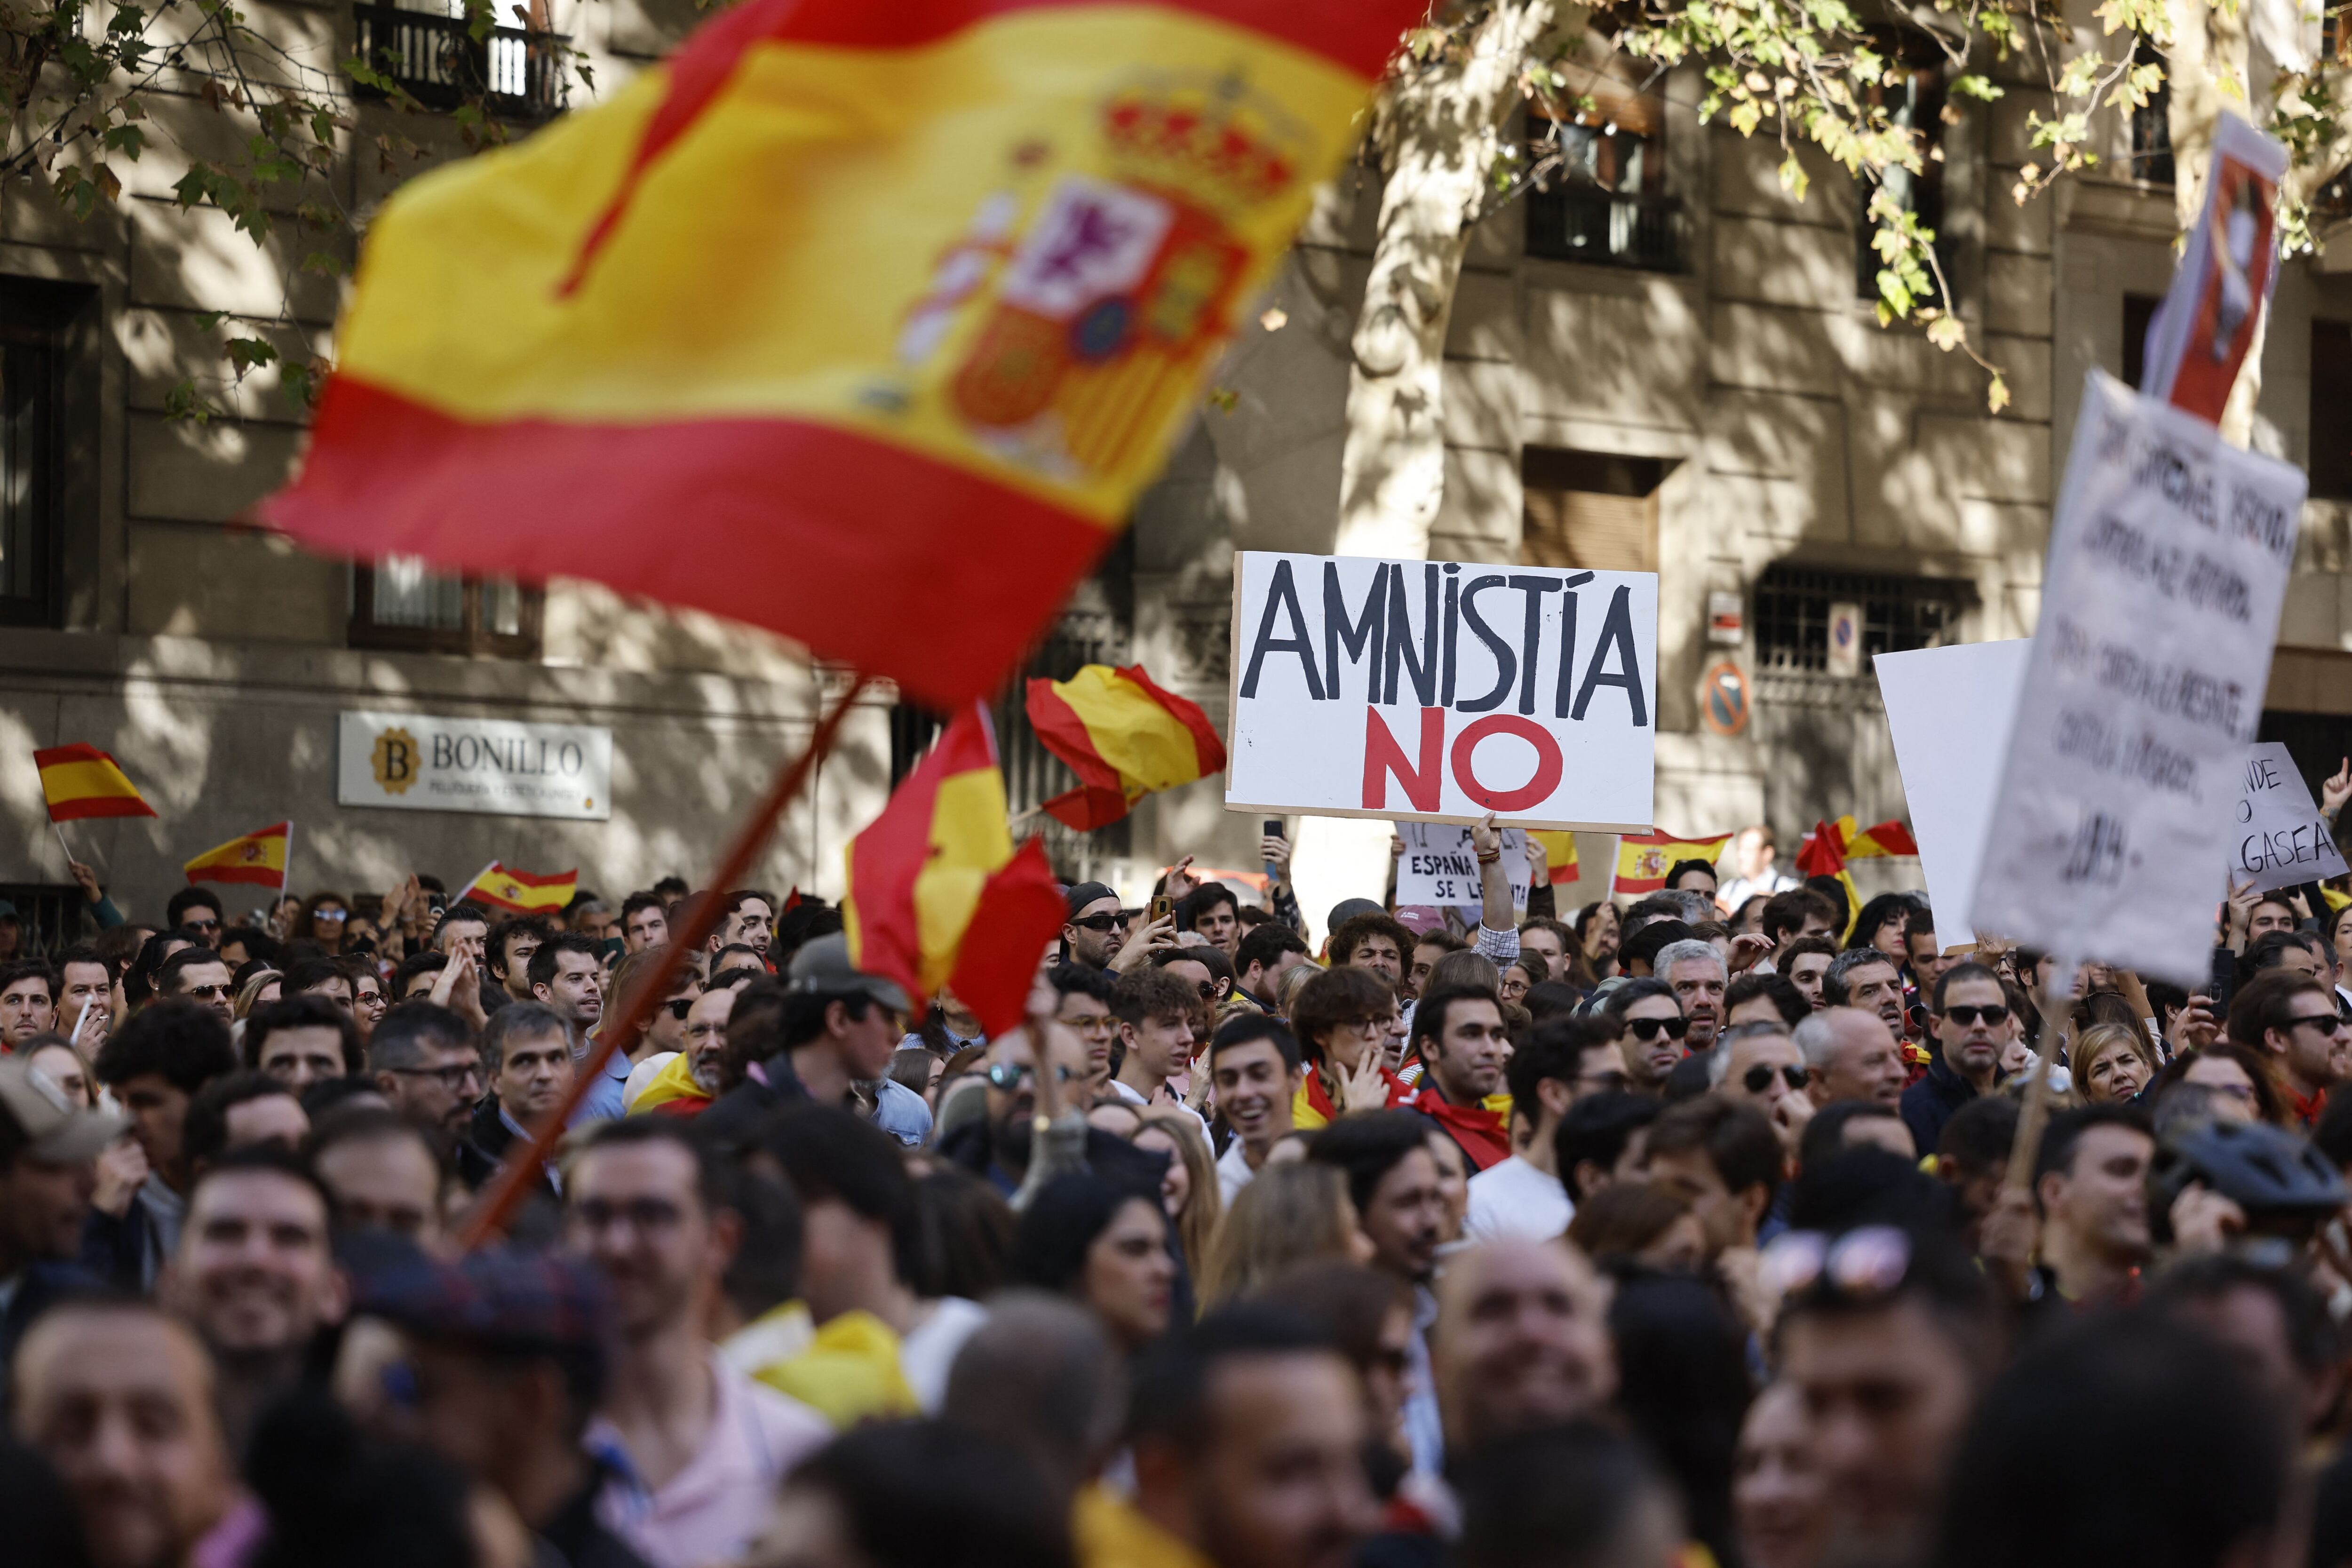 Muchos españoles se encuentran cansados de que los políticos nunca cumplan sus promesas, sin importar si son derecha o izquierda. Foto: Oscar Del Pozo/AFP